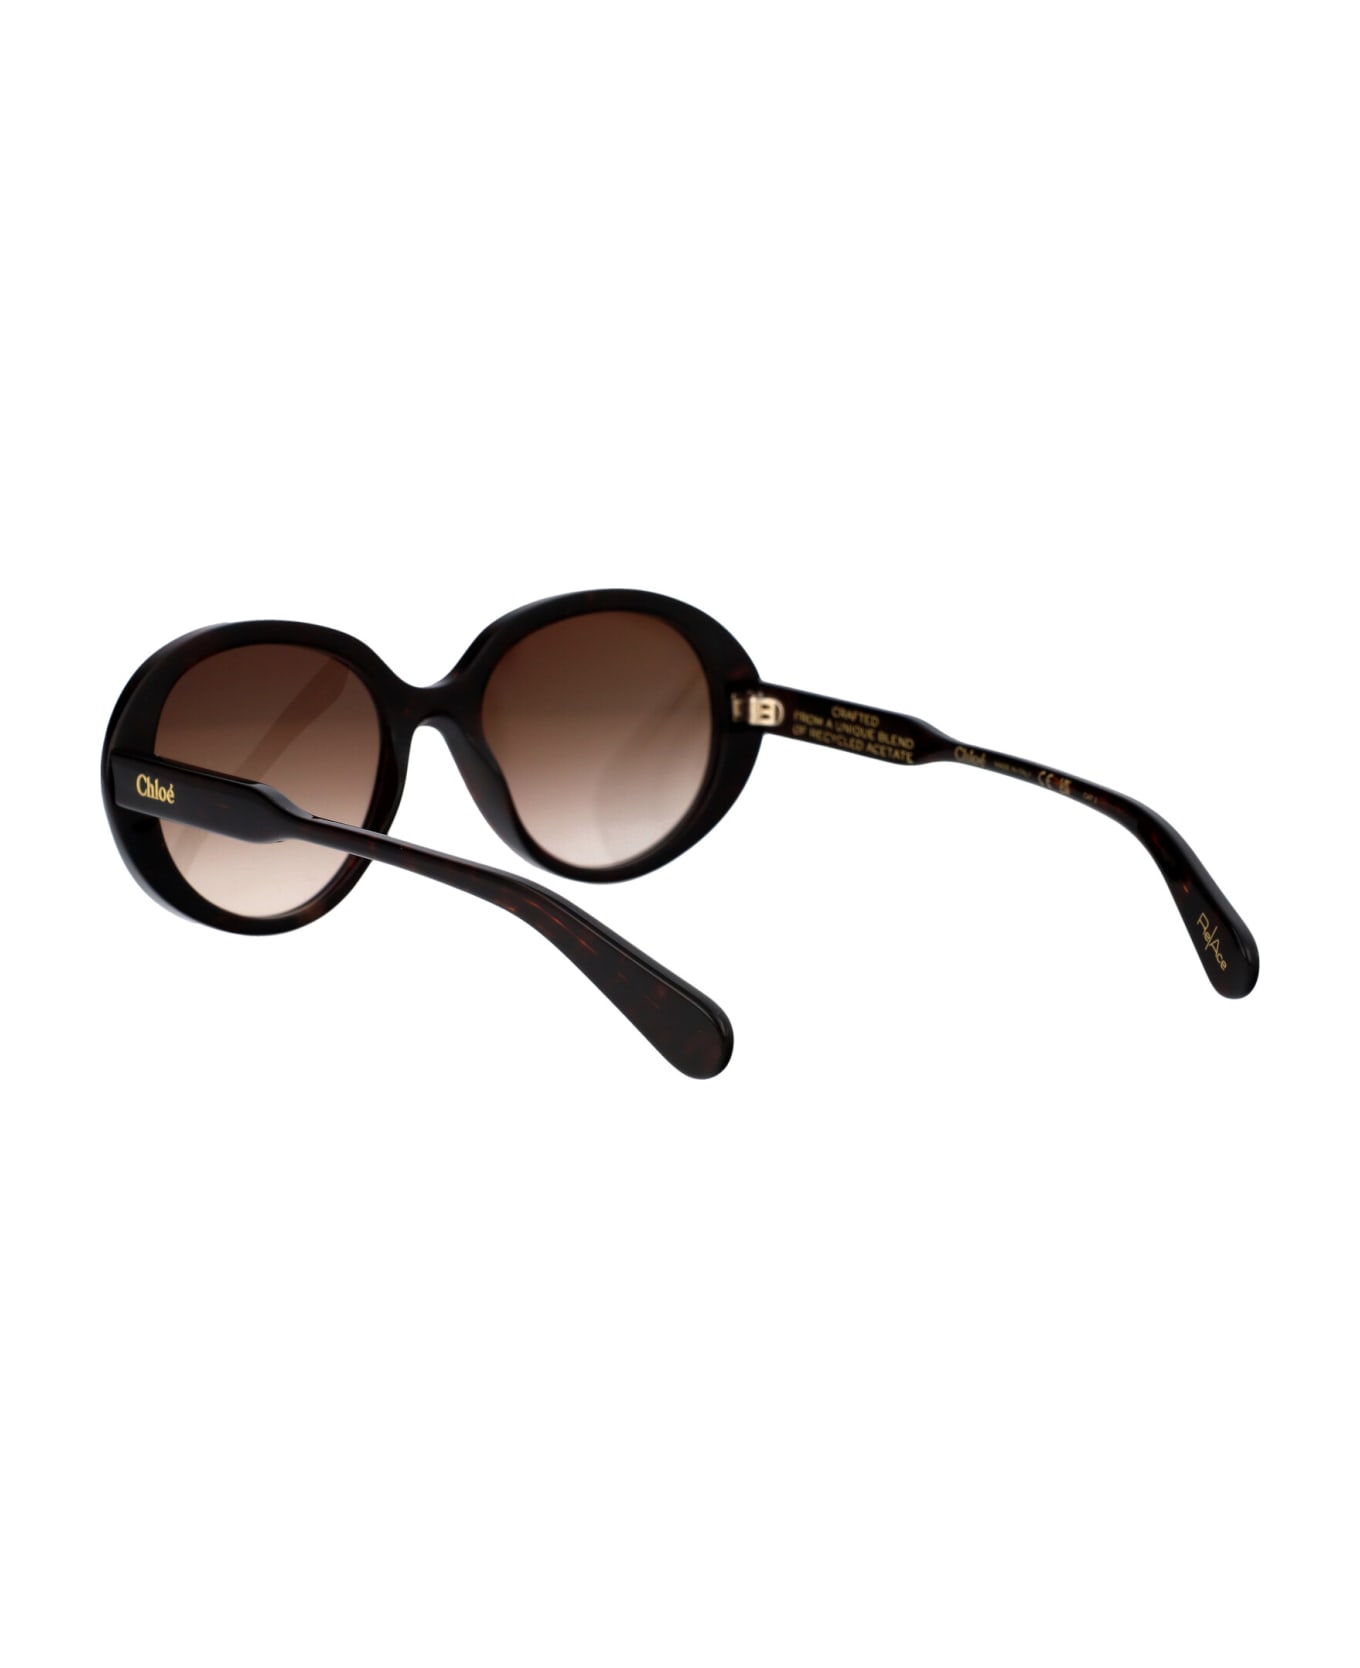 Chloé Eyewear Ch0221s Sunglasses - 002 HAVANA HAVANA BROWN